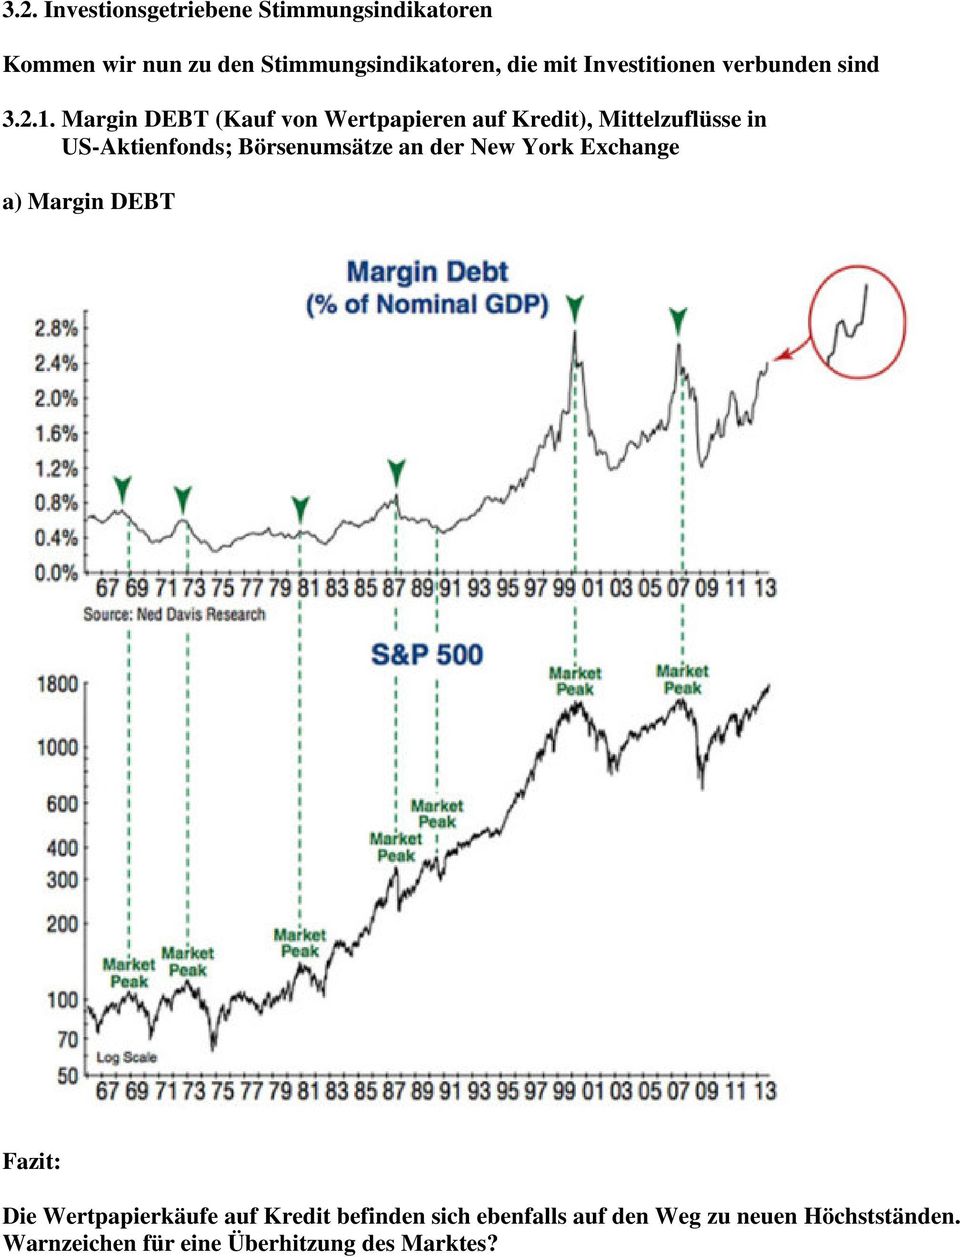 Margin DEBT (Kauf von Wertpapieren auf Kredit), Mittelzuflüsse in US-Aktienfonds; Börsenumsätze an